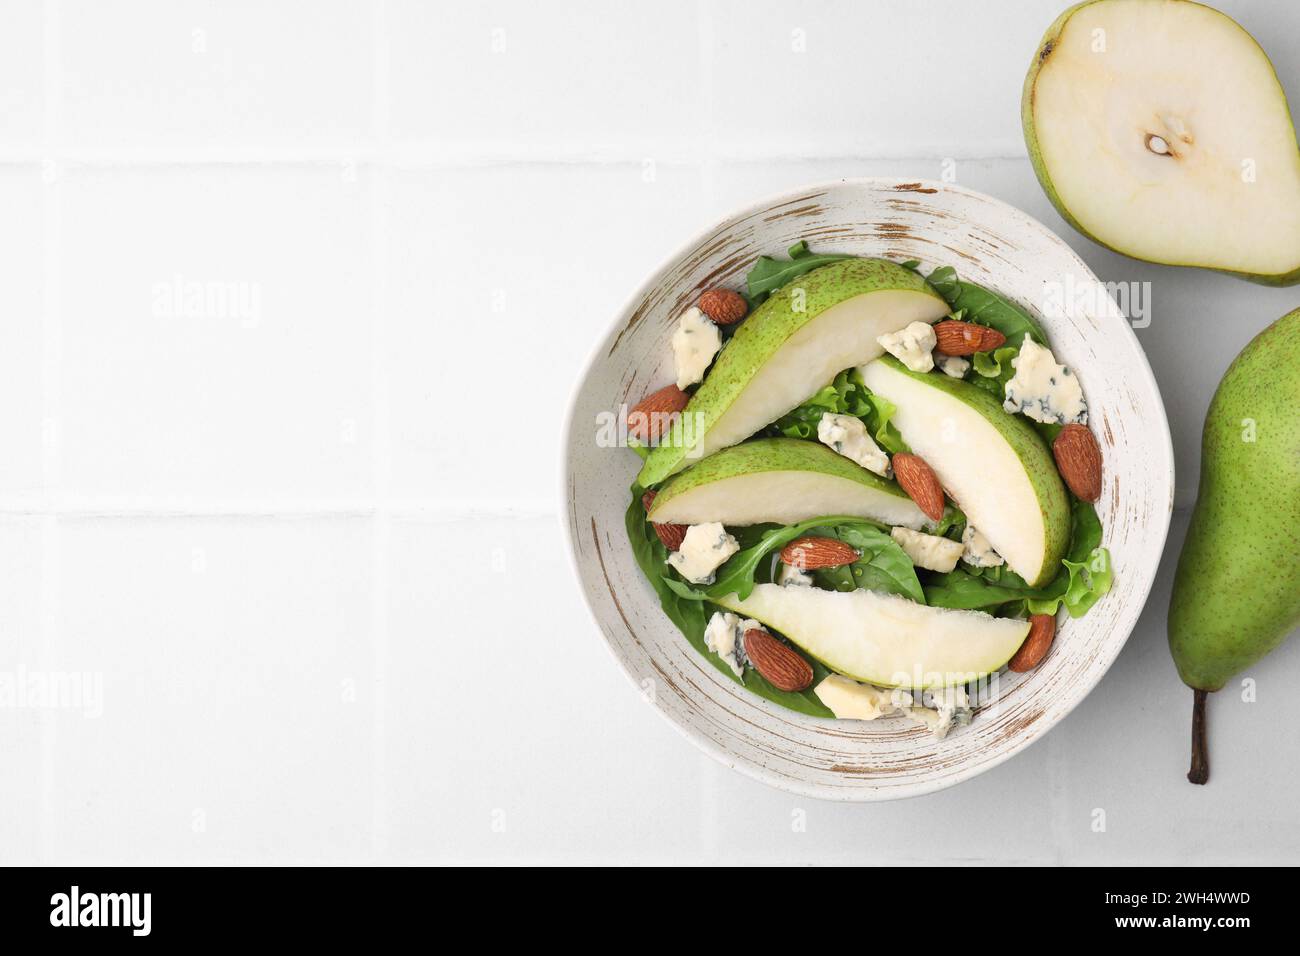 Délicieuse salade de poires dans un bol et fruits sur une table carrelée légère, vue de dessus. Espace pour le texte Banque D'Images